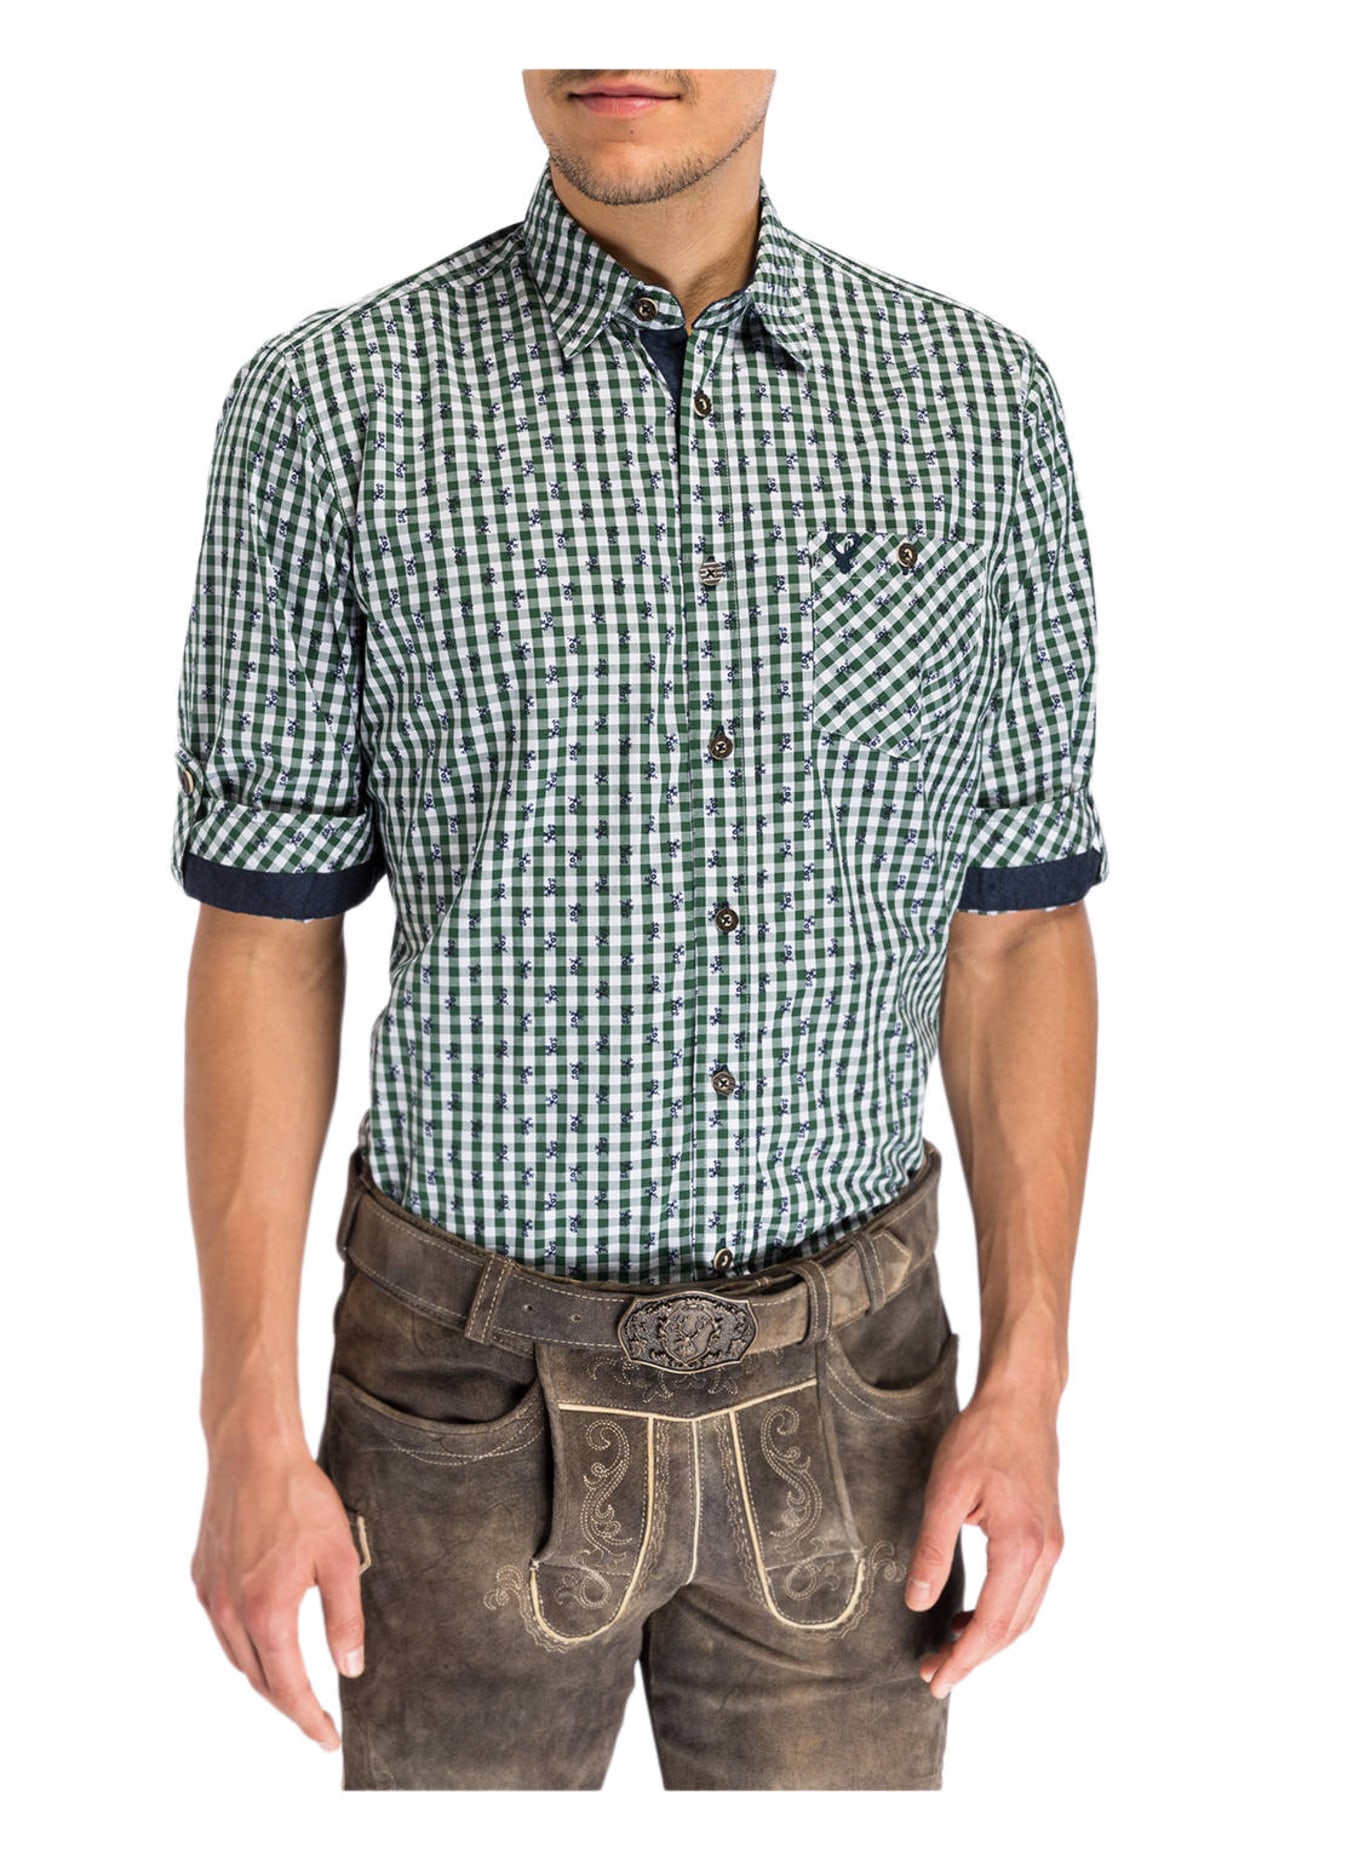 KRÜGER Trachten shirt , Color: 105 weiß-grün (Image 2)